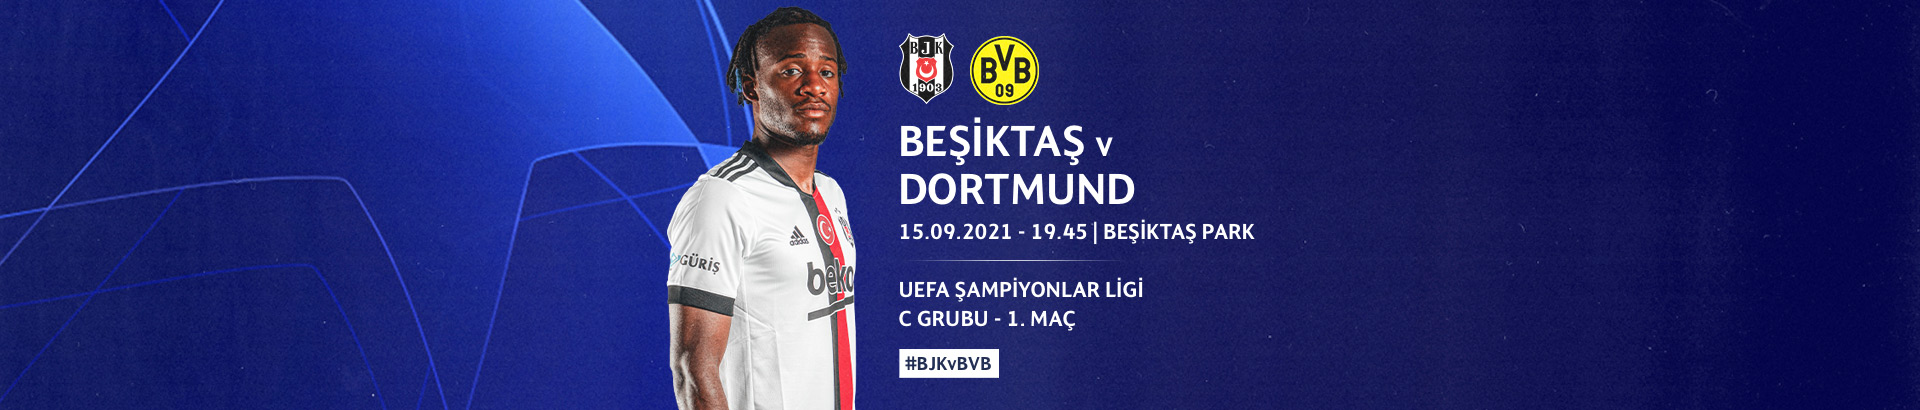 Beşiktaş-Dortmund Canlı İzle